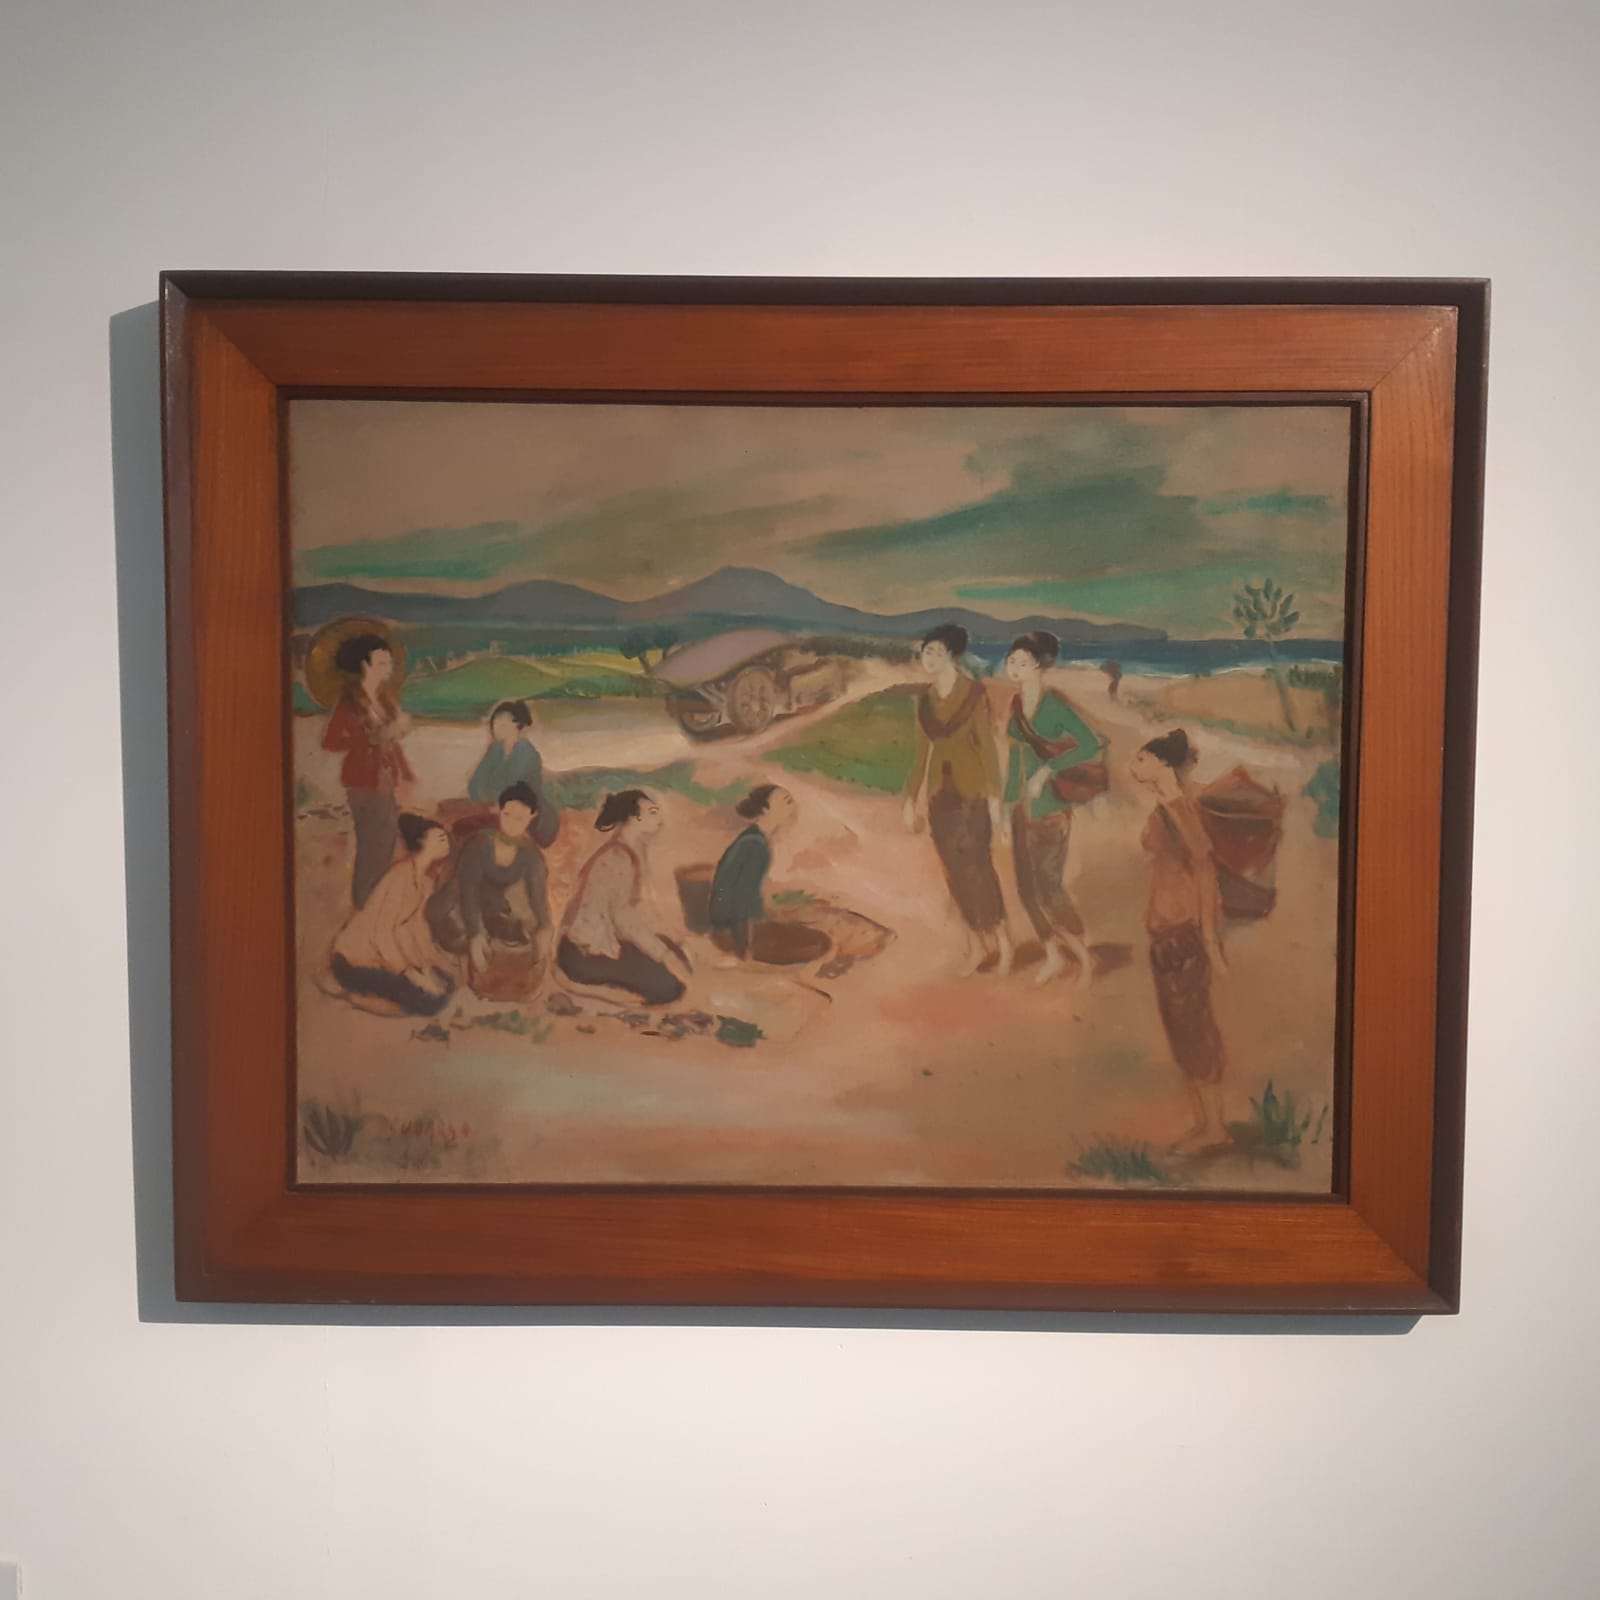 Lukisan Sudarso berjudul Berjualan di Pantai cat minyak di atas kanvas 60,5 X 80 cm, 1968  (Sumber gambar Hypeabis.id/ Prasetyo Agung)